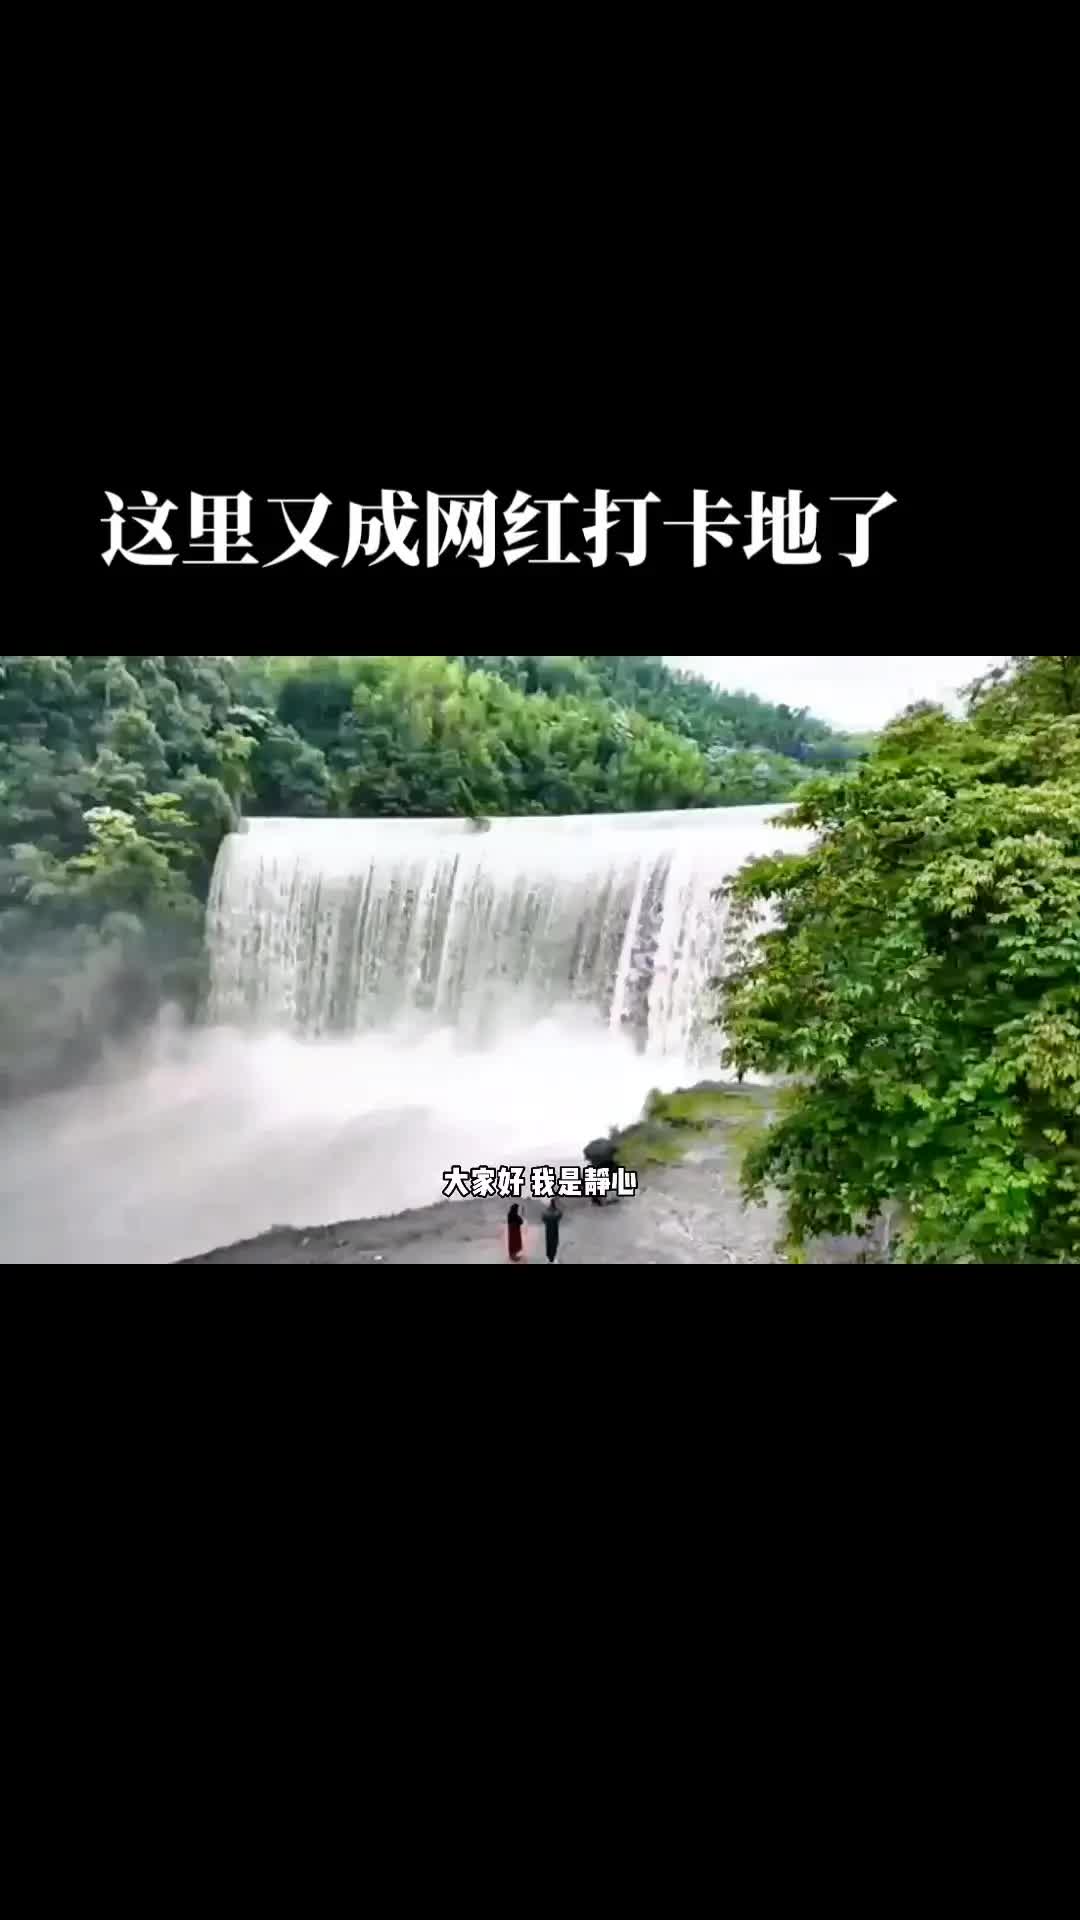 萍乡的“黄果树”瀑布不是天天都有看